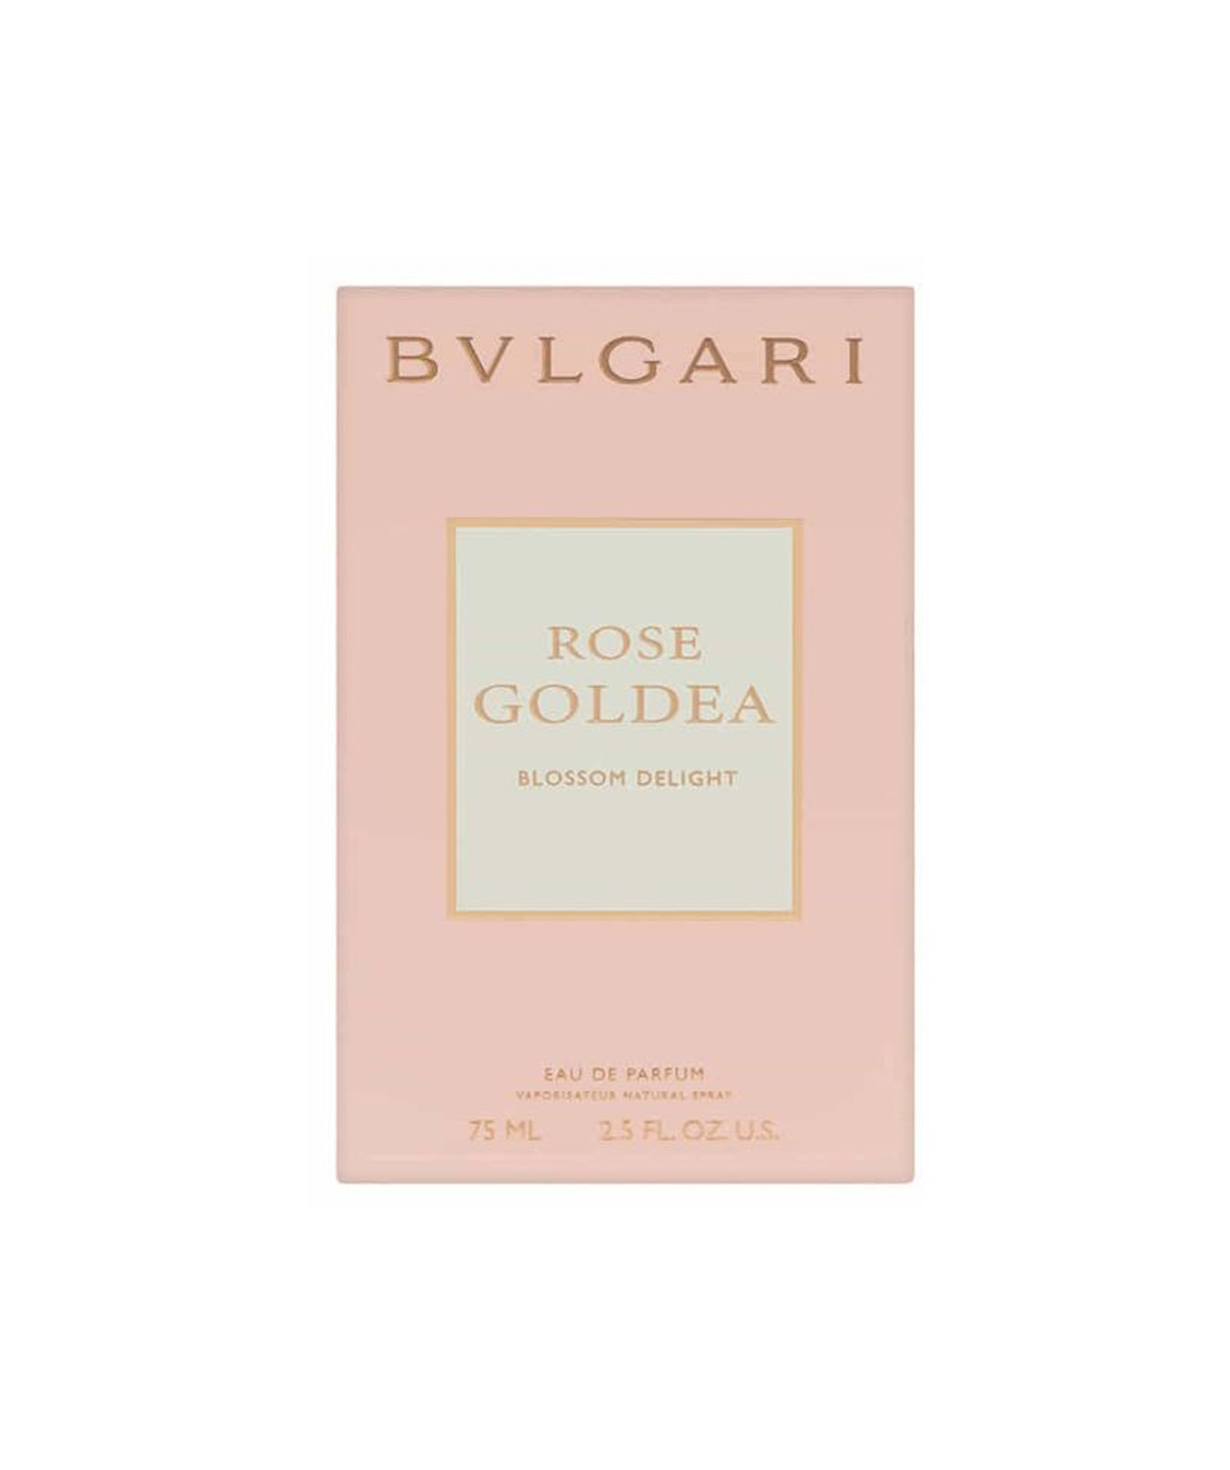 Օծանելիք «Bvlgari» Rose Goldea, Blossom Delight, կանացի, 75 մլ